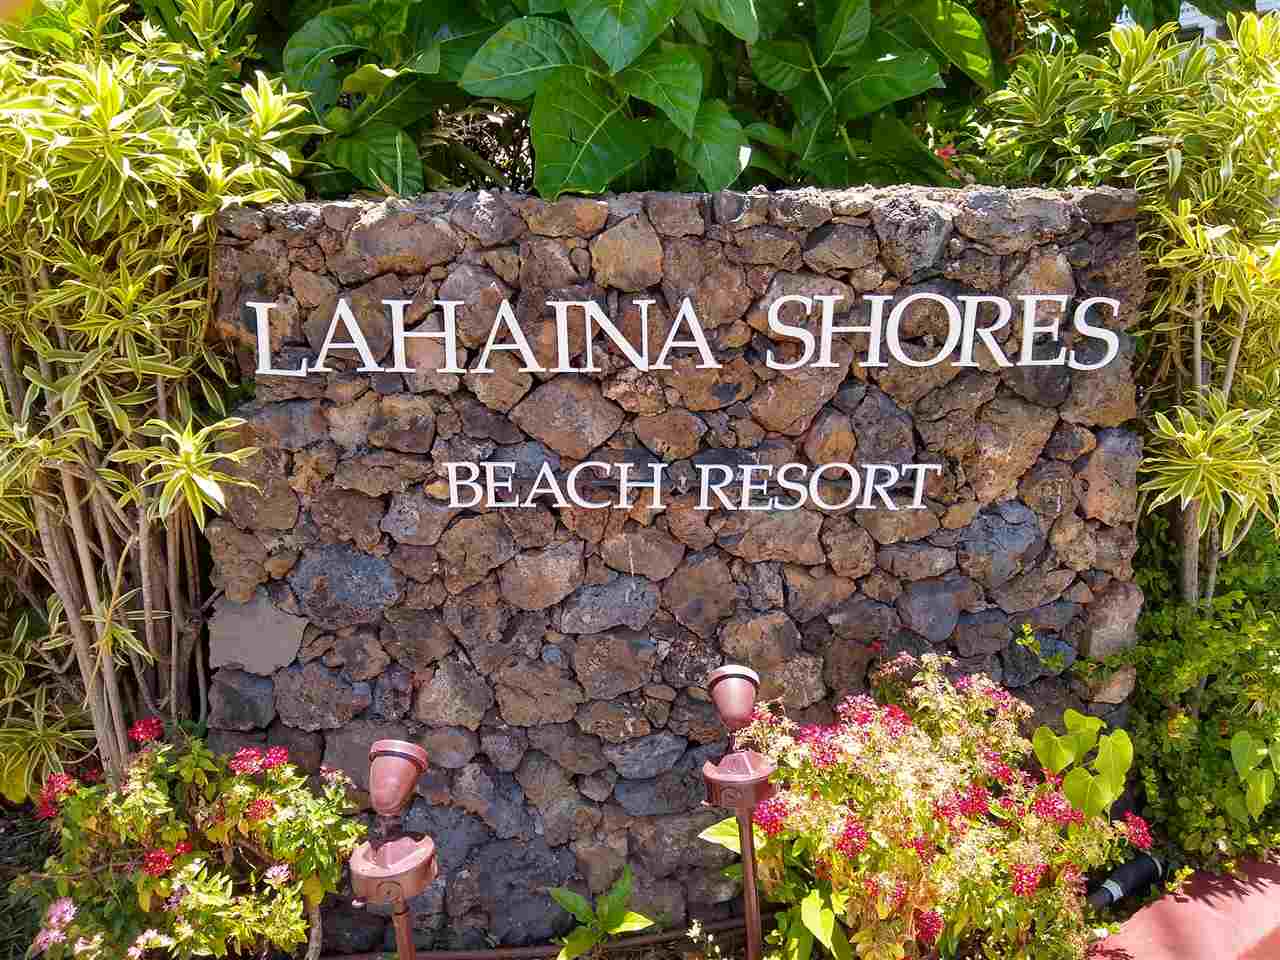 Lahaina Shores condo # 508, Lahaina, Hawaii - photo 3 of 30